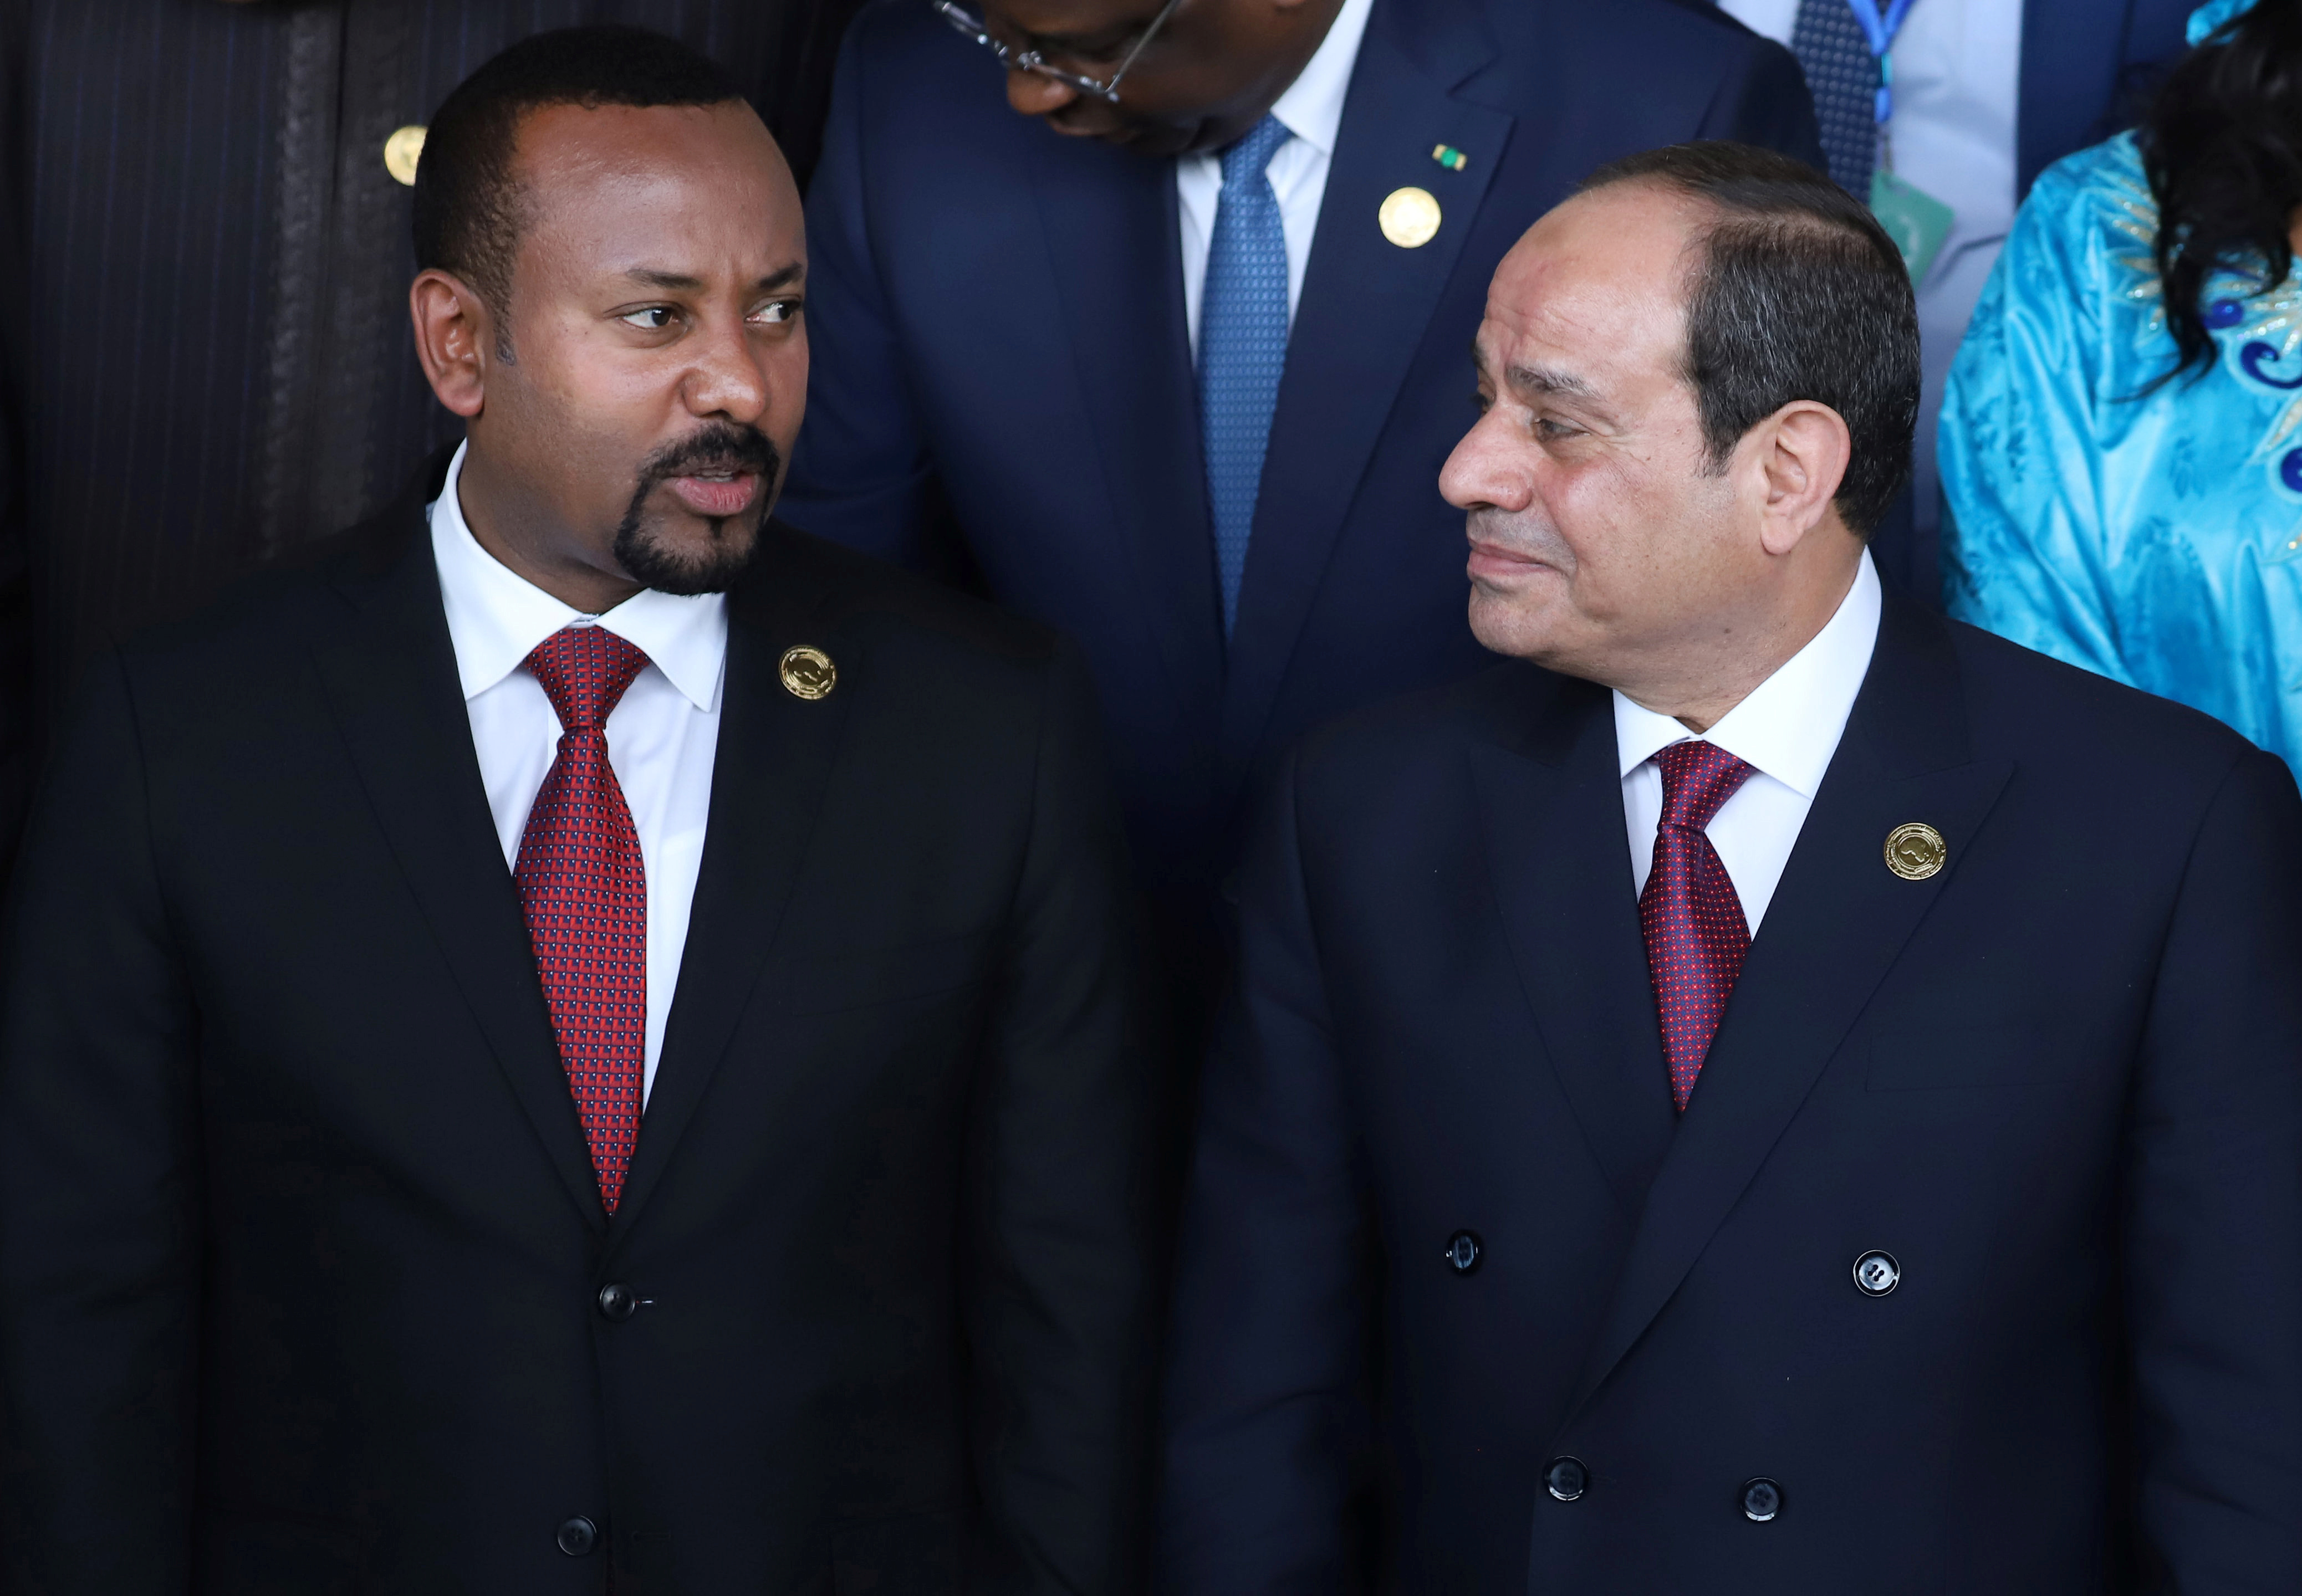 El Presidente egipcio Abdel Fattah al Sisi se reúne con el Primer Ministro de Etiopía, Abiy Ahmed, en la apertura del 33º período ordinario de sesiones de la Asamblea de Jefes de Estado y de Gobierno de la Unión Africana en Addis Abeba (Etiopía), el 9 de febrero de 2020 (REUTERS/Tiksa Negeri)